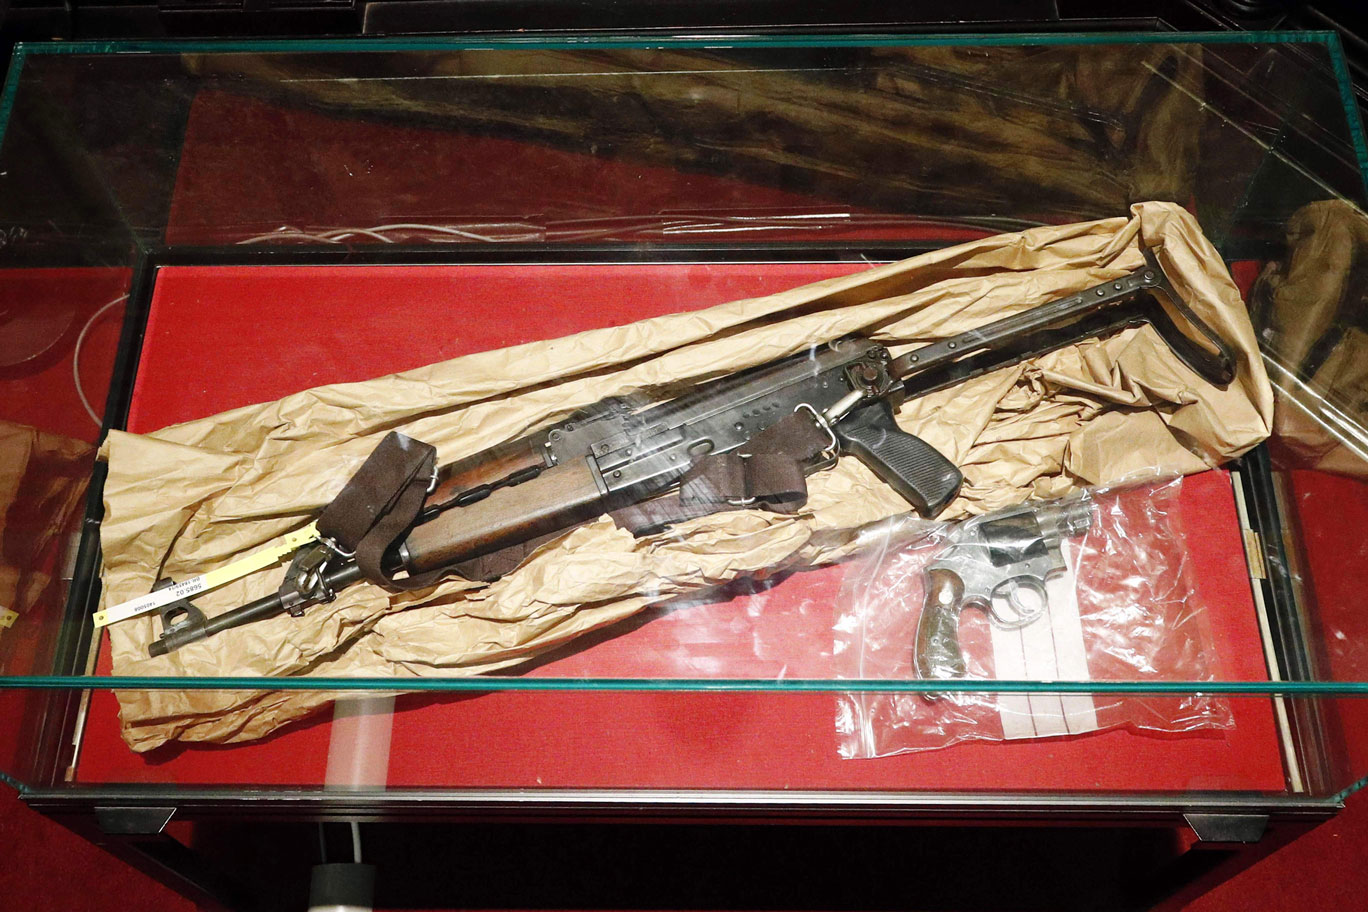 السلاح الذي استخدمه مهدي نموش في الهجوم على المتحف اليهودي في بروكسل